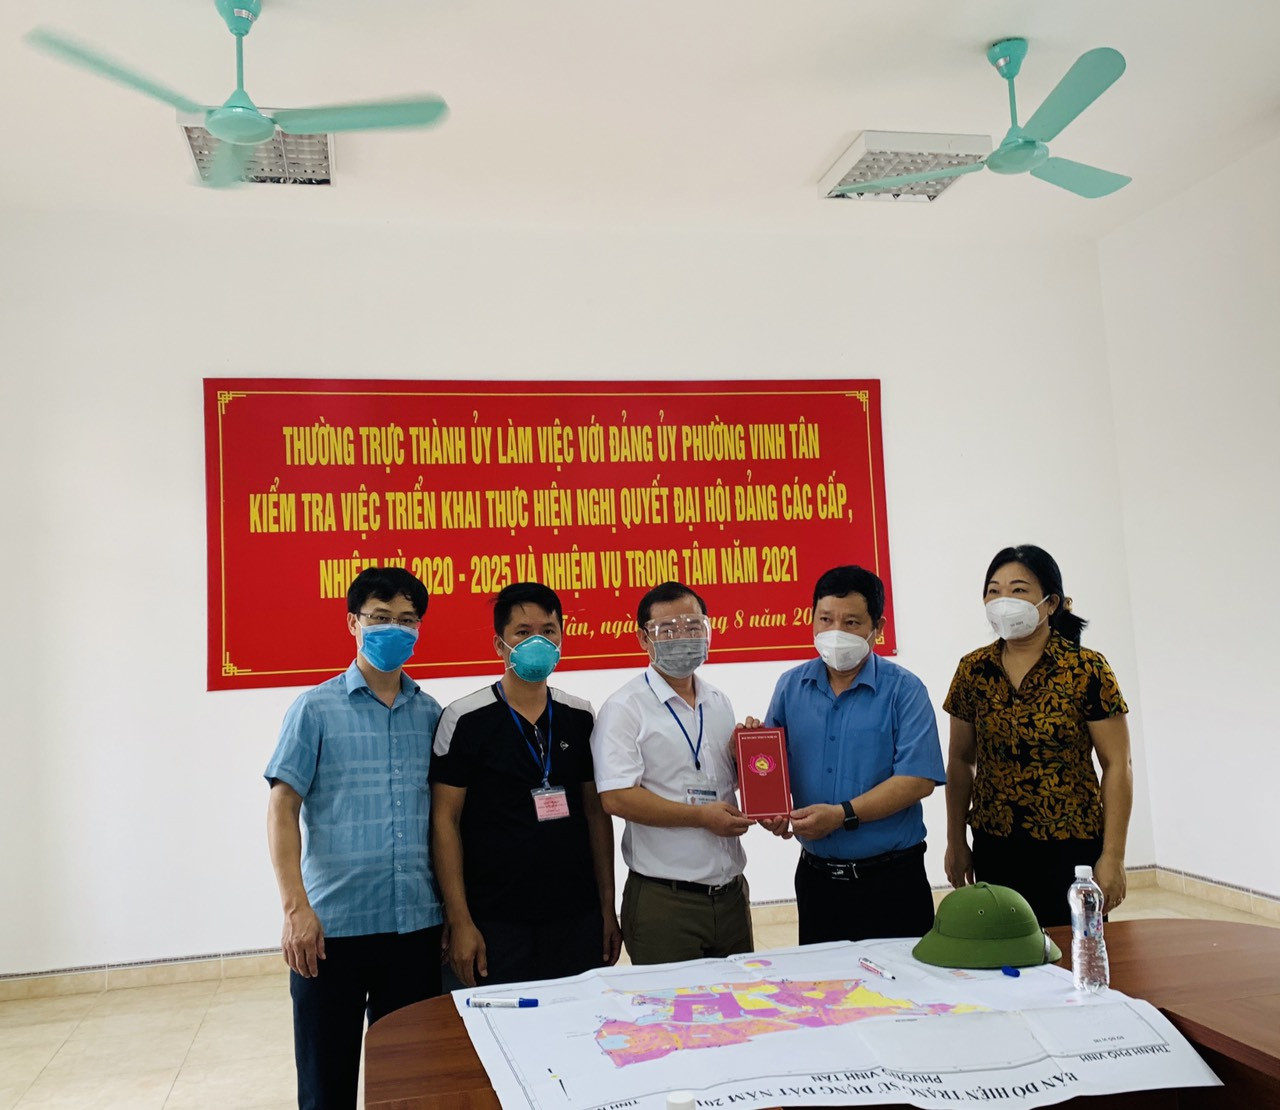 Đại diện lãnh đạo Ban Tổ chức Tỉnh ủy trao số tiền 10 triệu đồng ủng hộ Ban Chỉ đạo phòng, chống dịch Covid-19 phường Vinh Tân. Ảnh: Hồng Huế